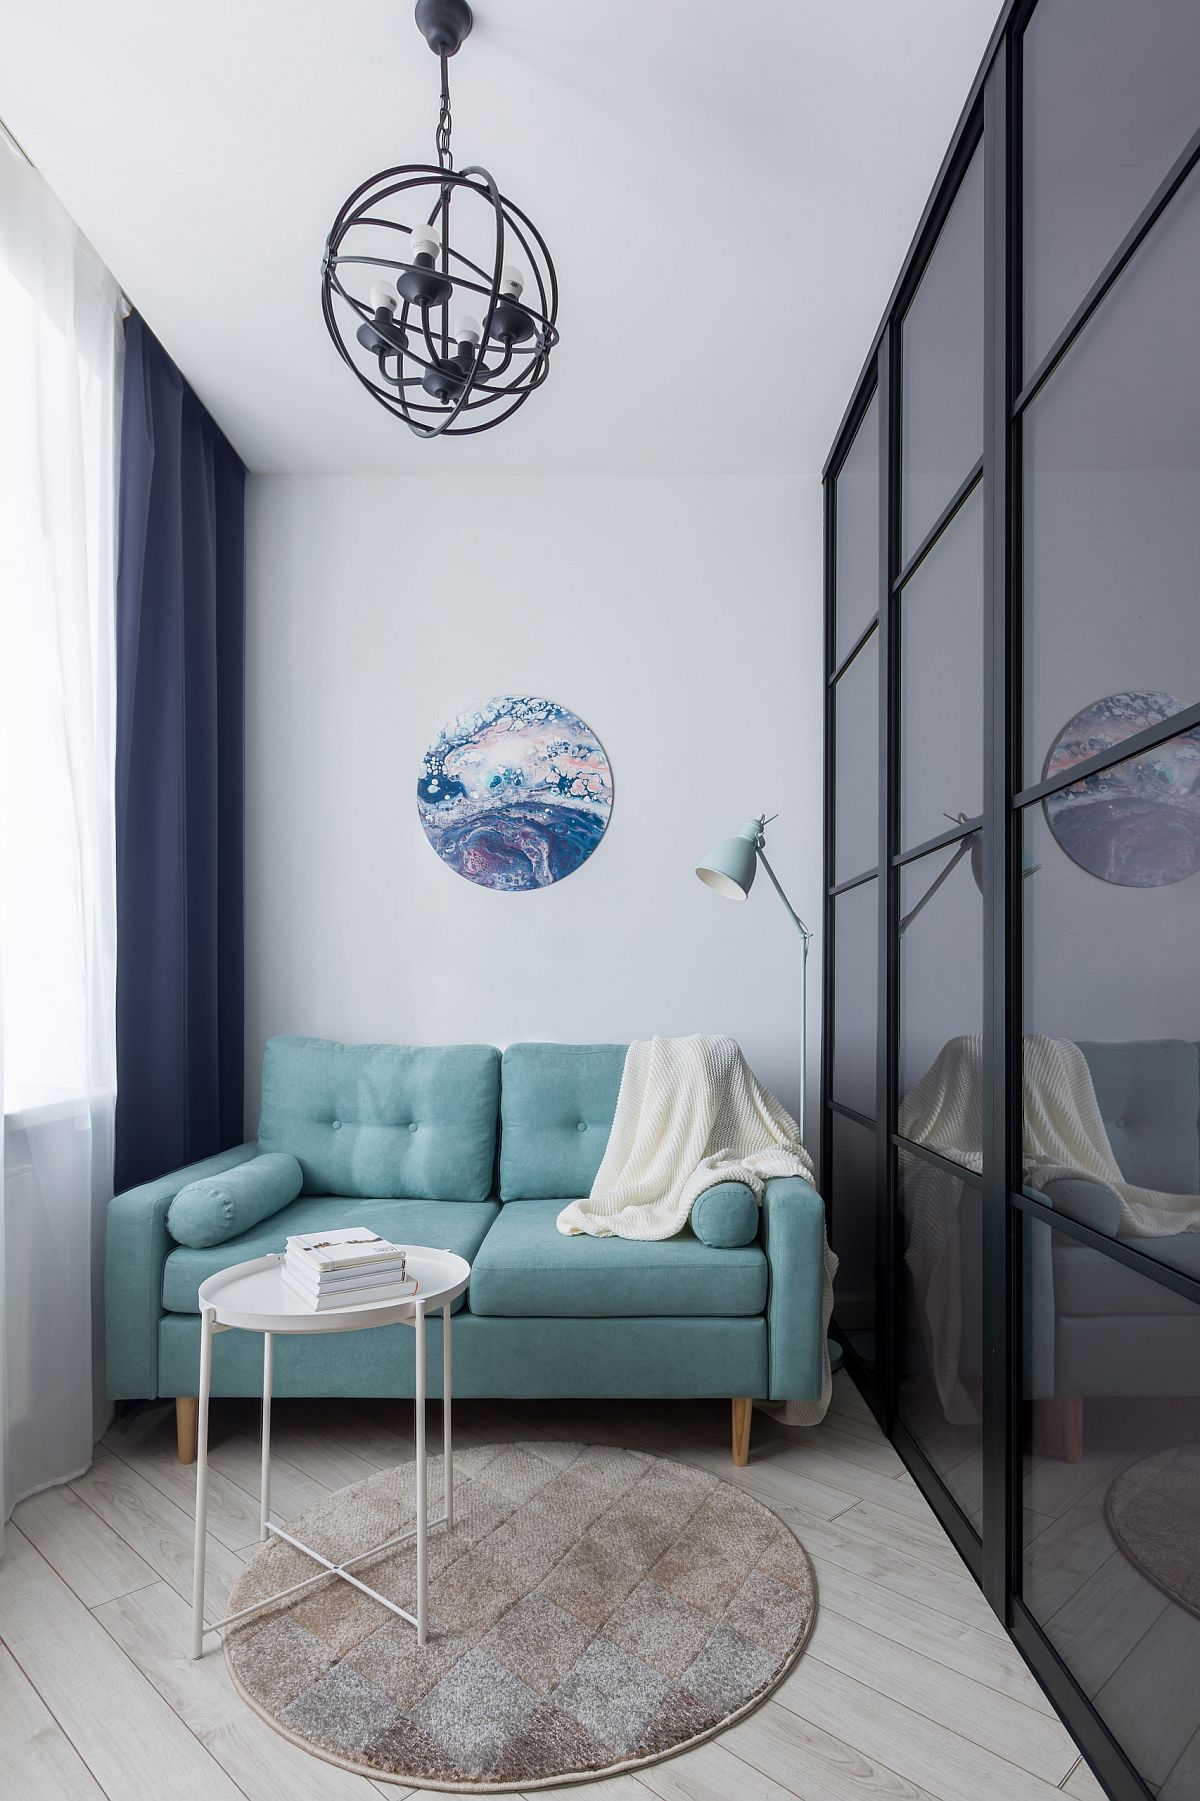 Phòng khách nhỏ với diện tích khá khiêm tốn nhưng vẫn vô cùng xinh xắn và đủ đầy khi được đặt sofa nhỏ gọn với màu xanh ngọc lam trẻ trung, bắt mắt